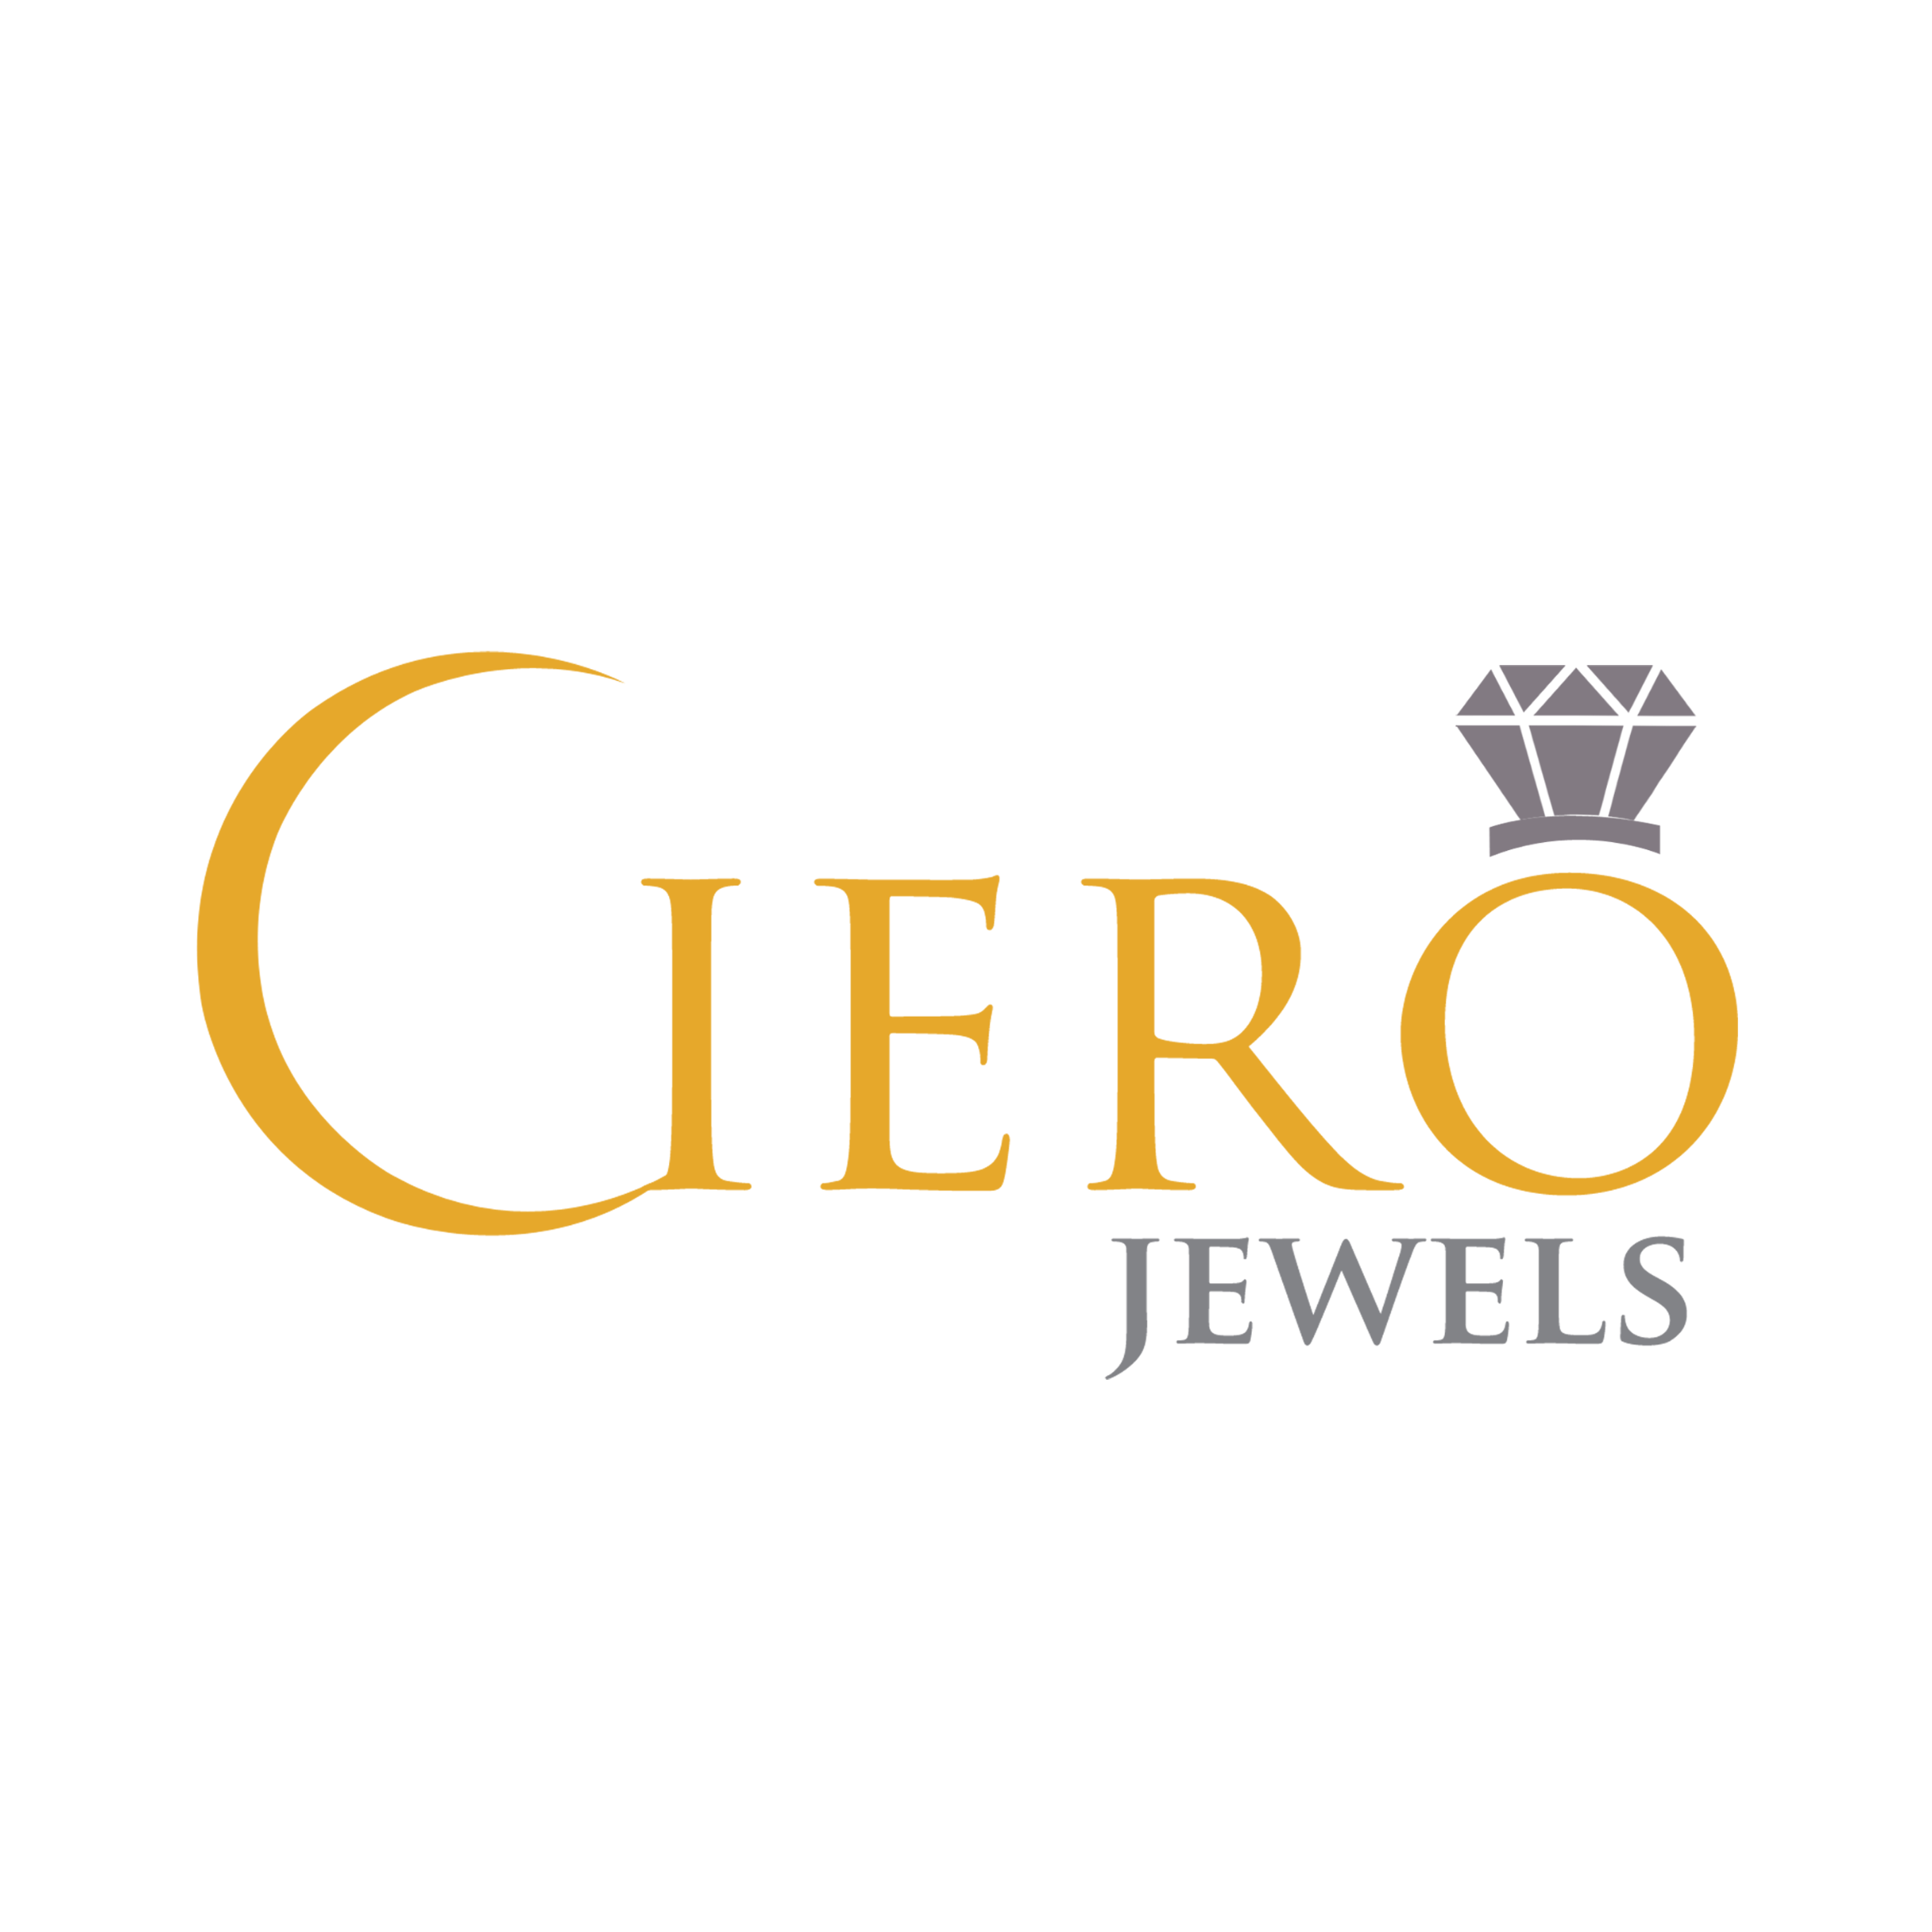 CieroJewels-Customized Jewellery